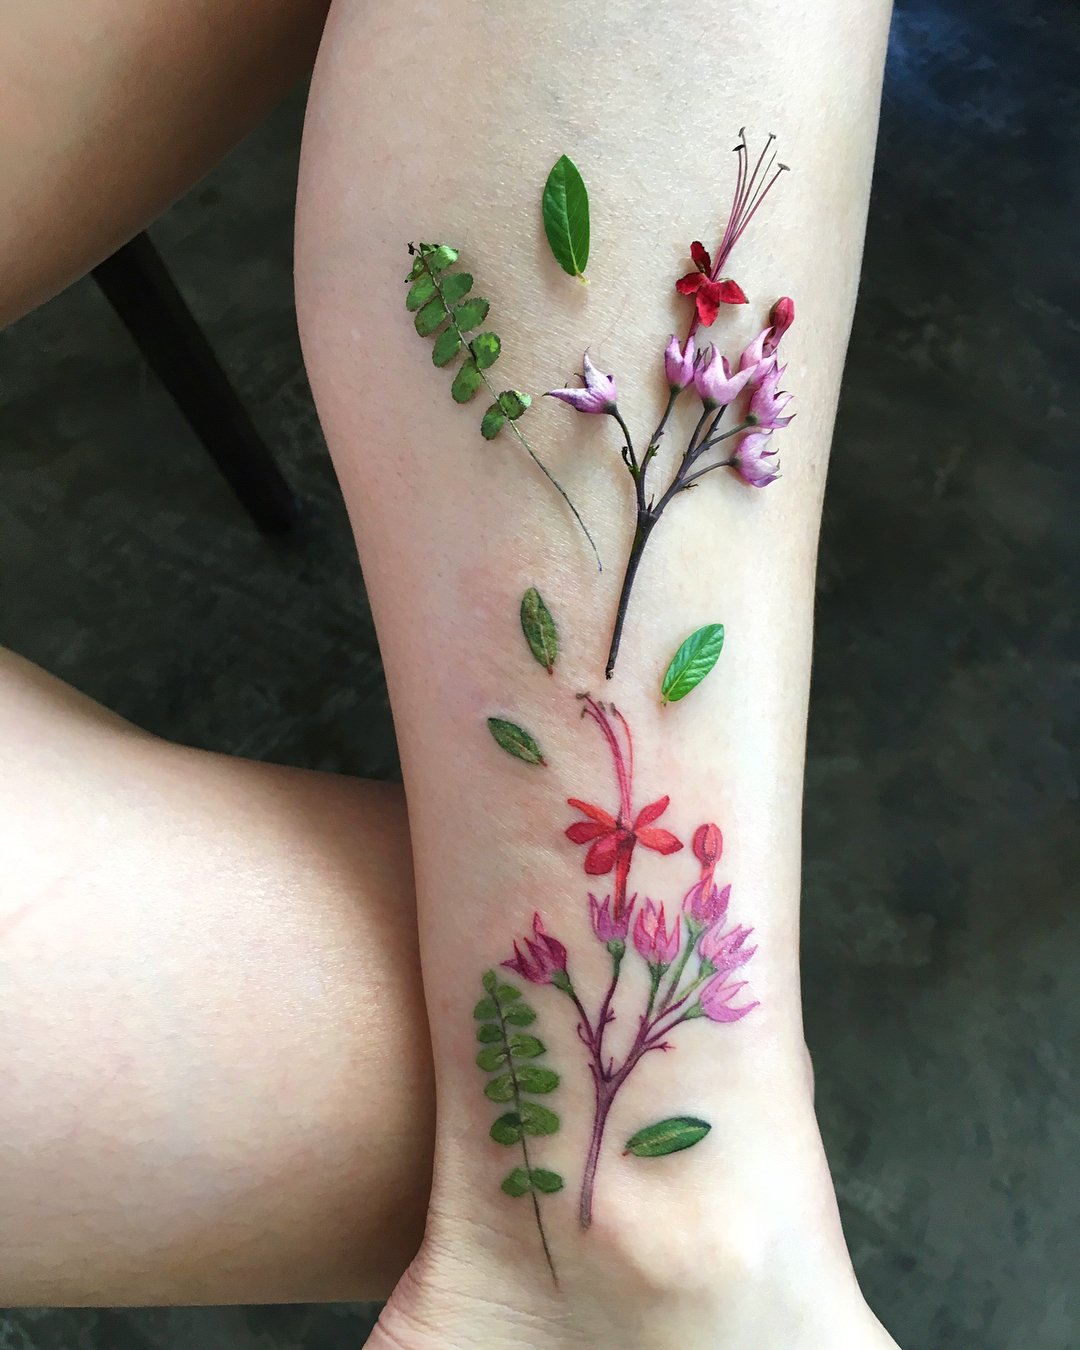 Rit Kit trasforma piante e fiori in tatuaggi iperrealistici